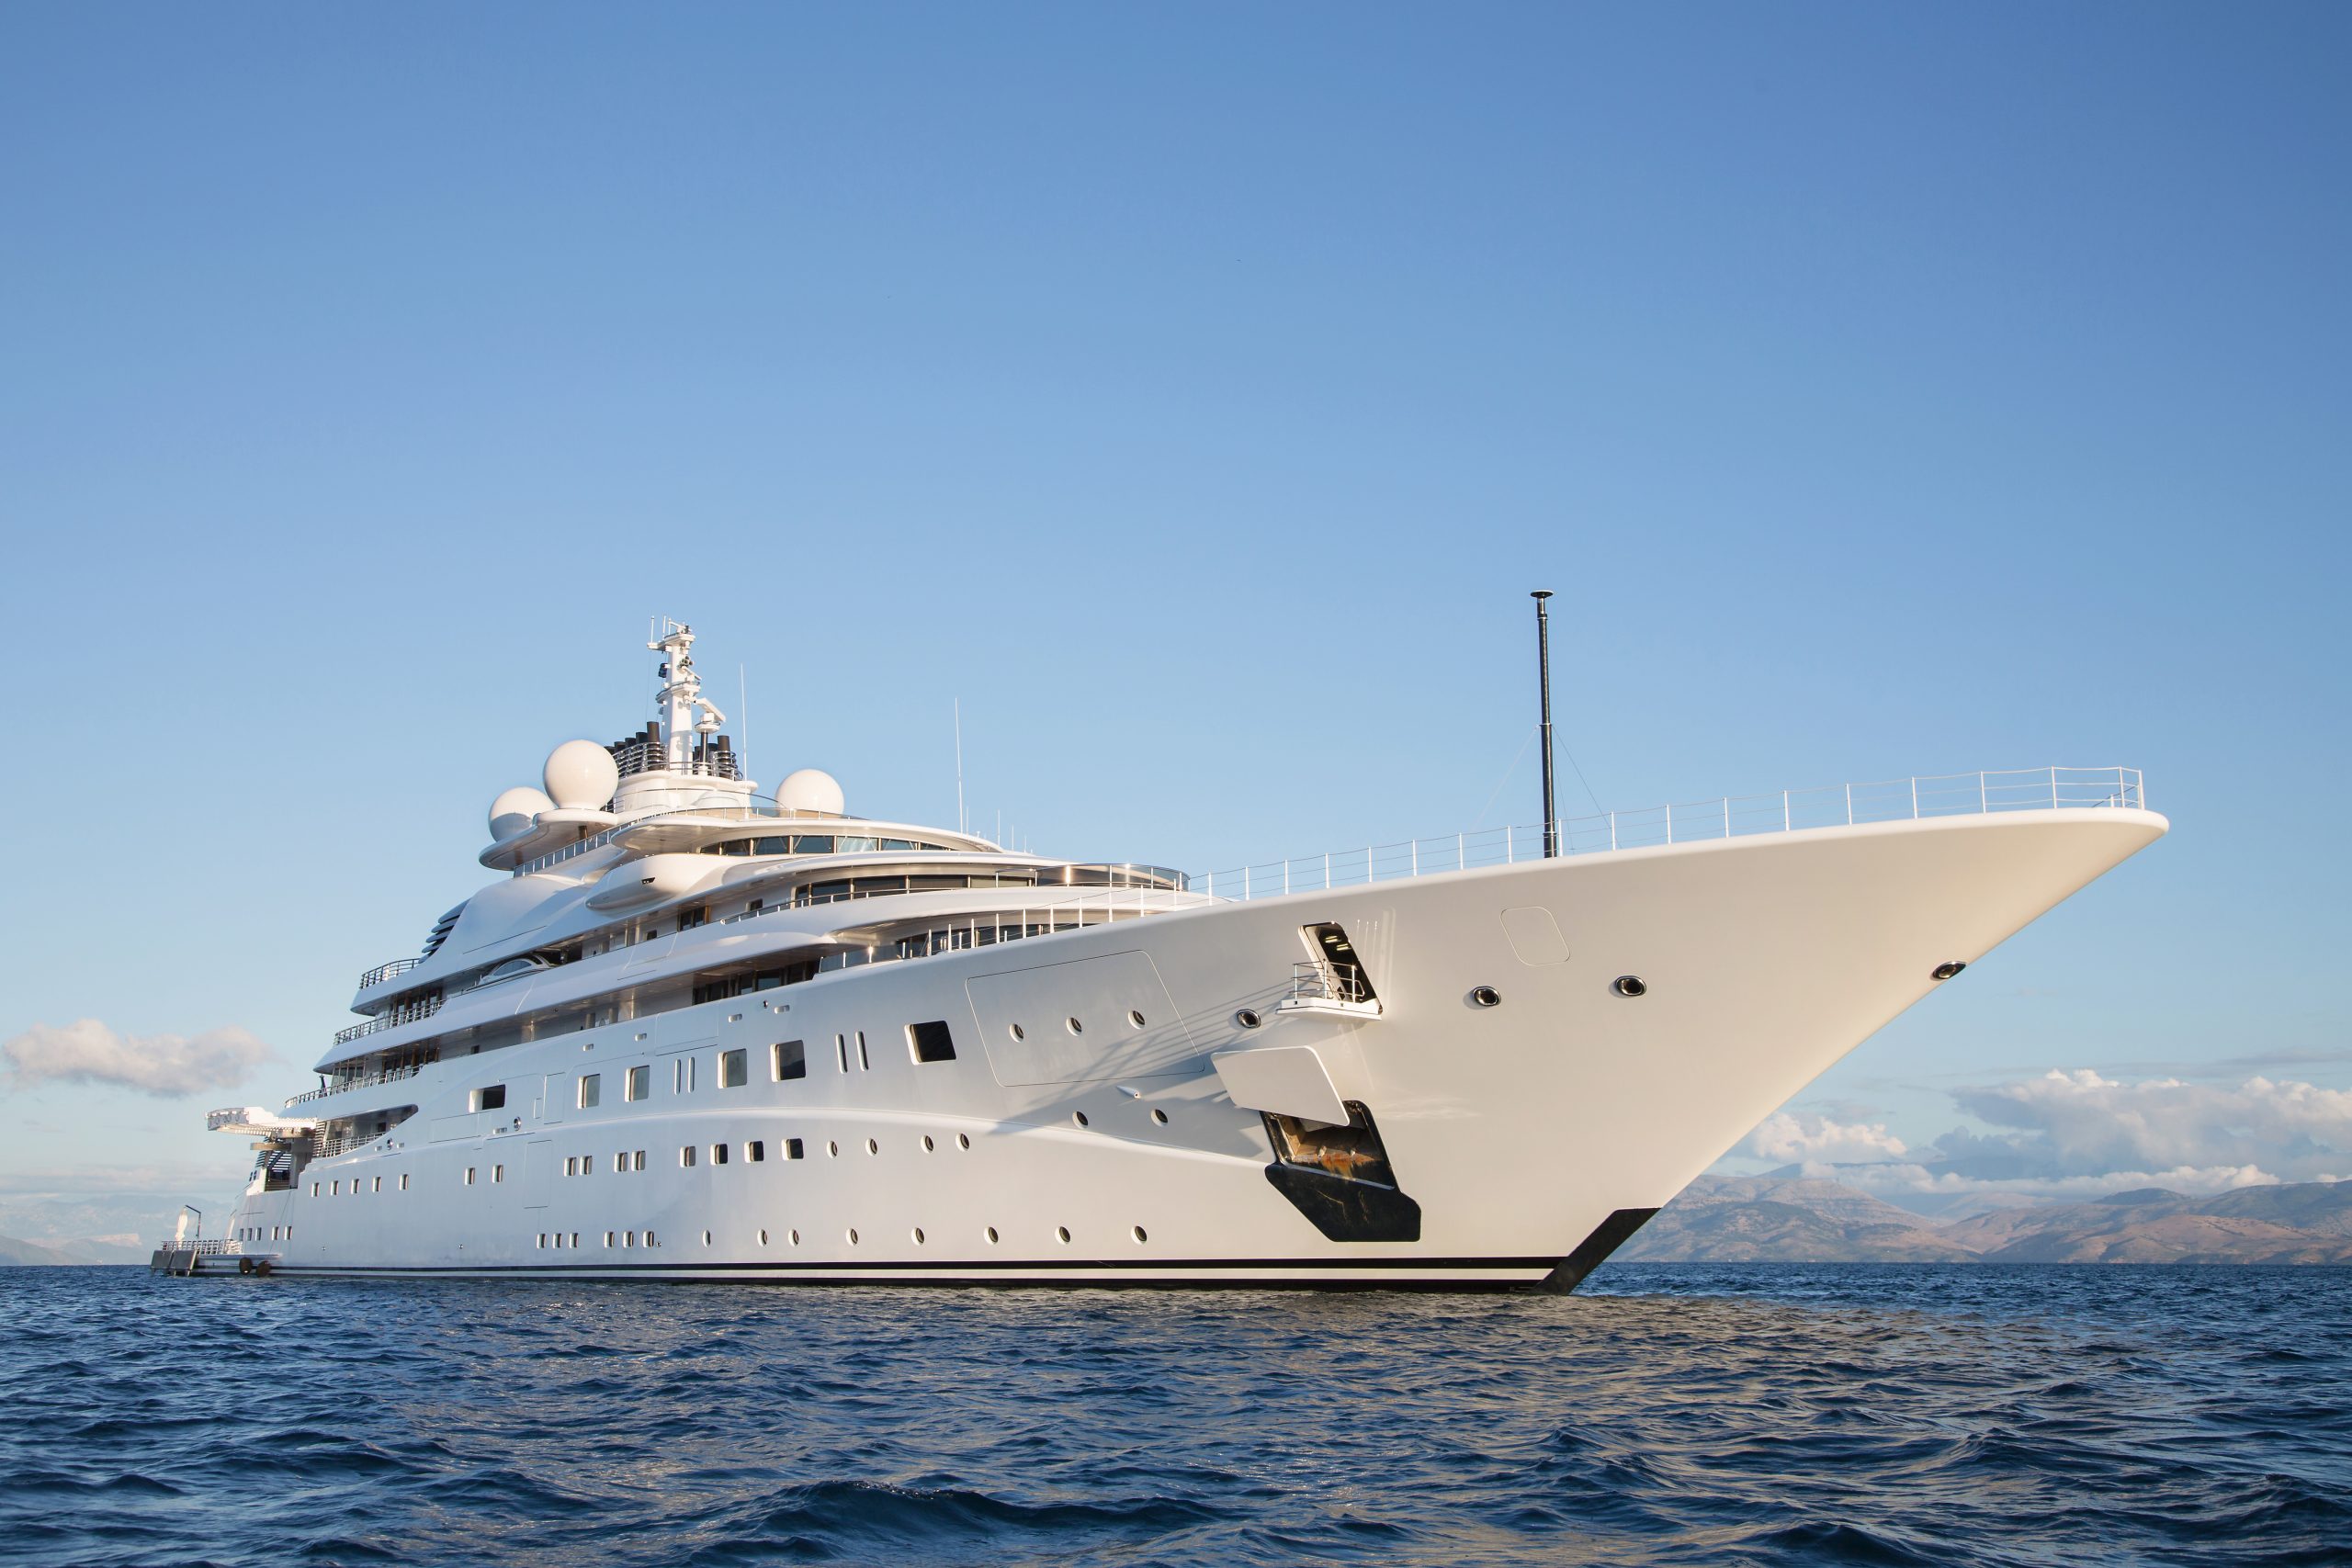 Luxus Mega Yacht - immens großes und langes Schiff